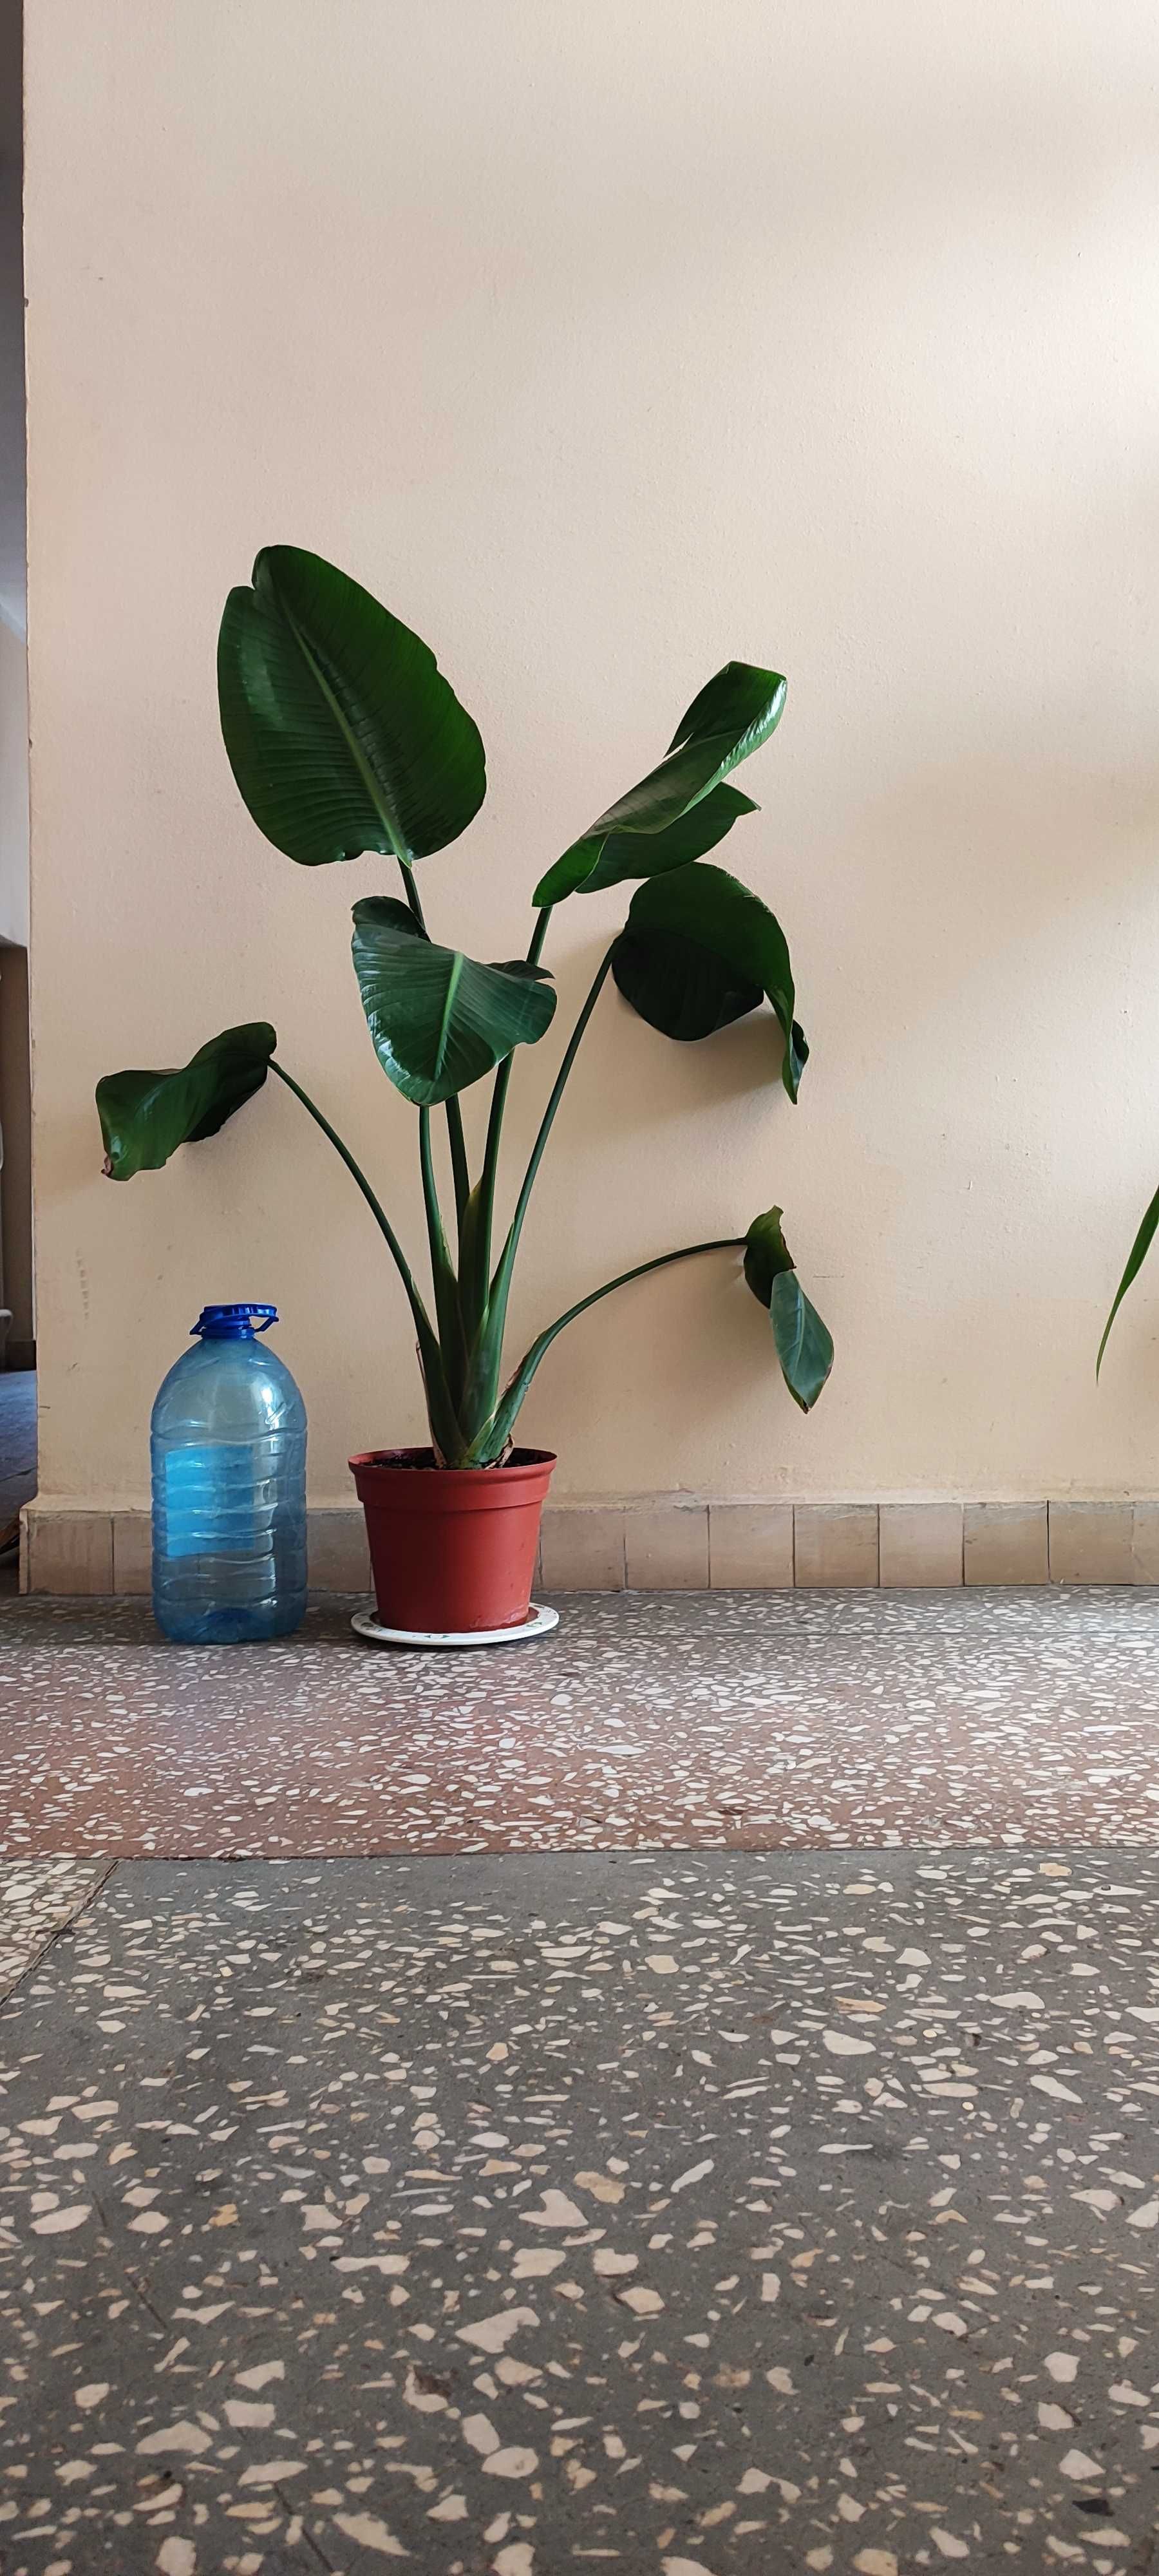 Крупномерное комнатное растение как Стрелиция, большой вазон